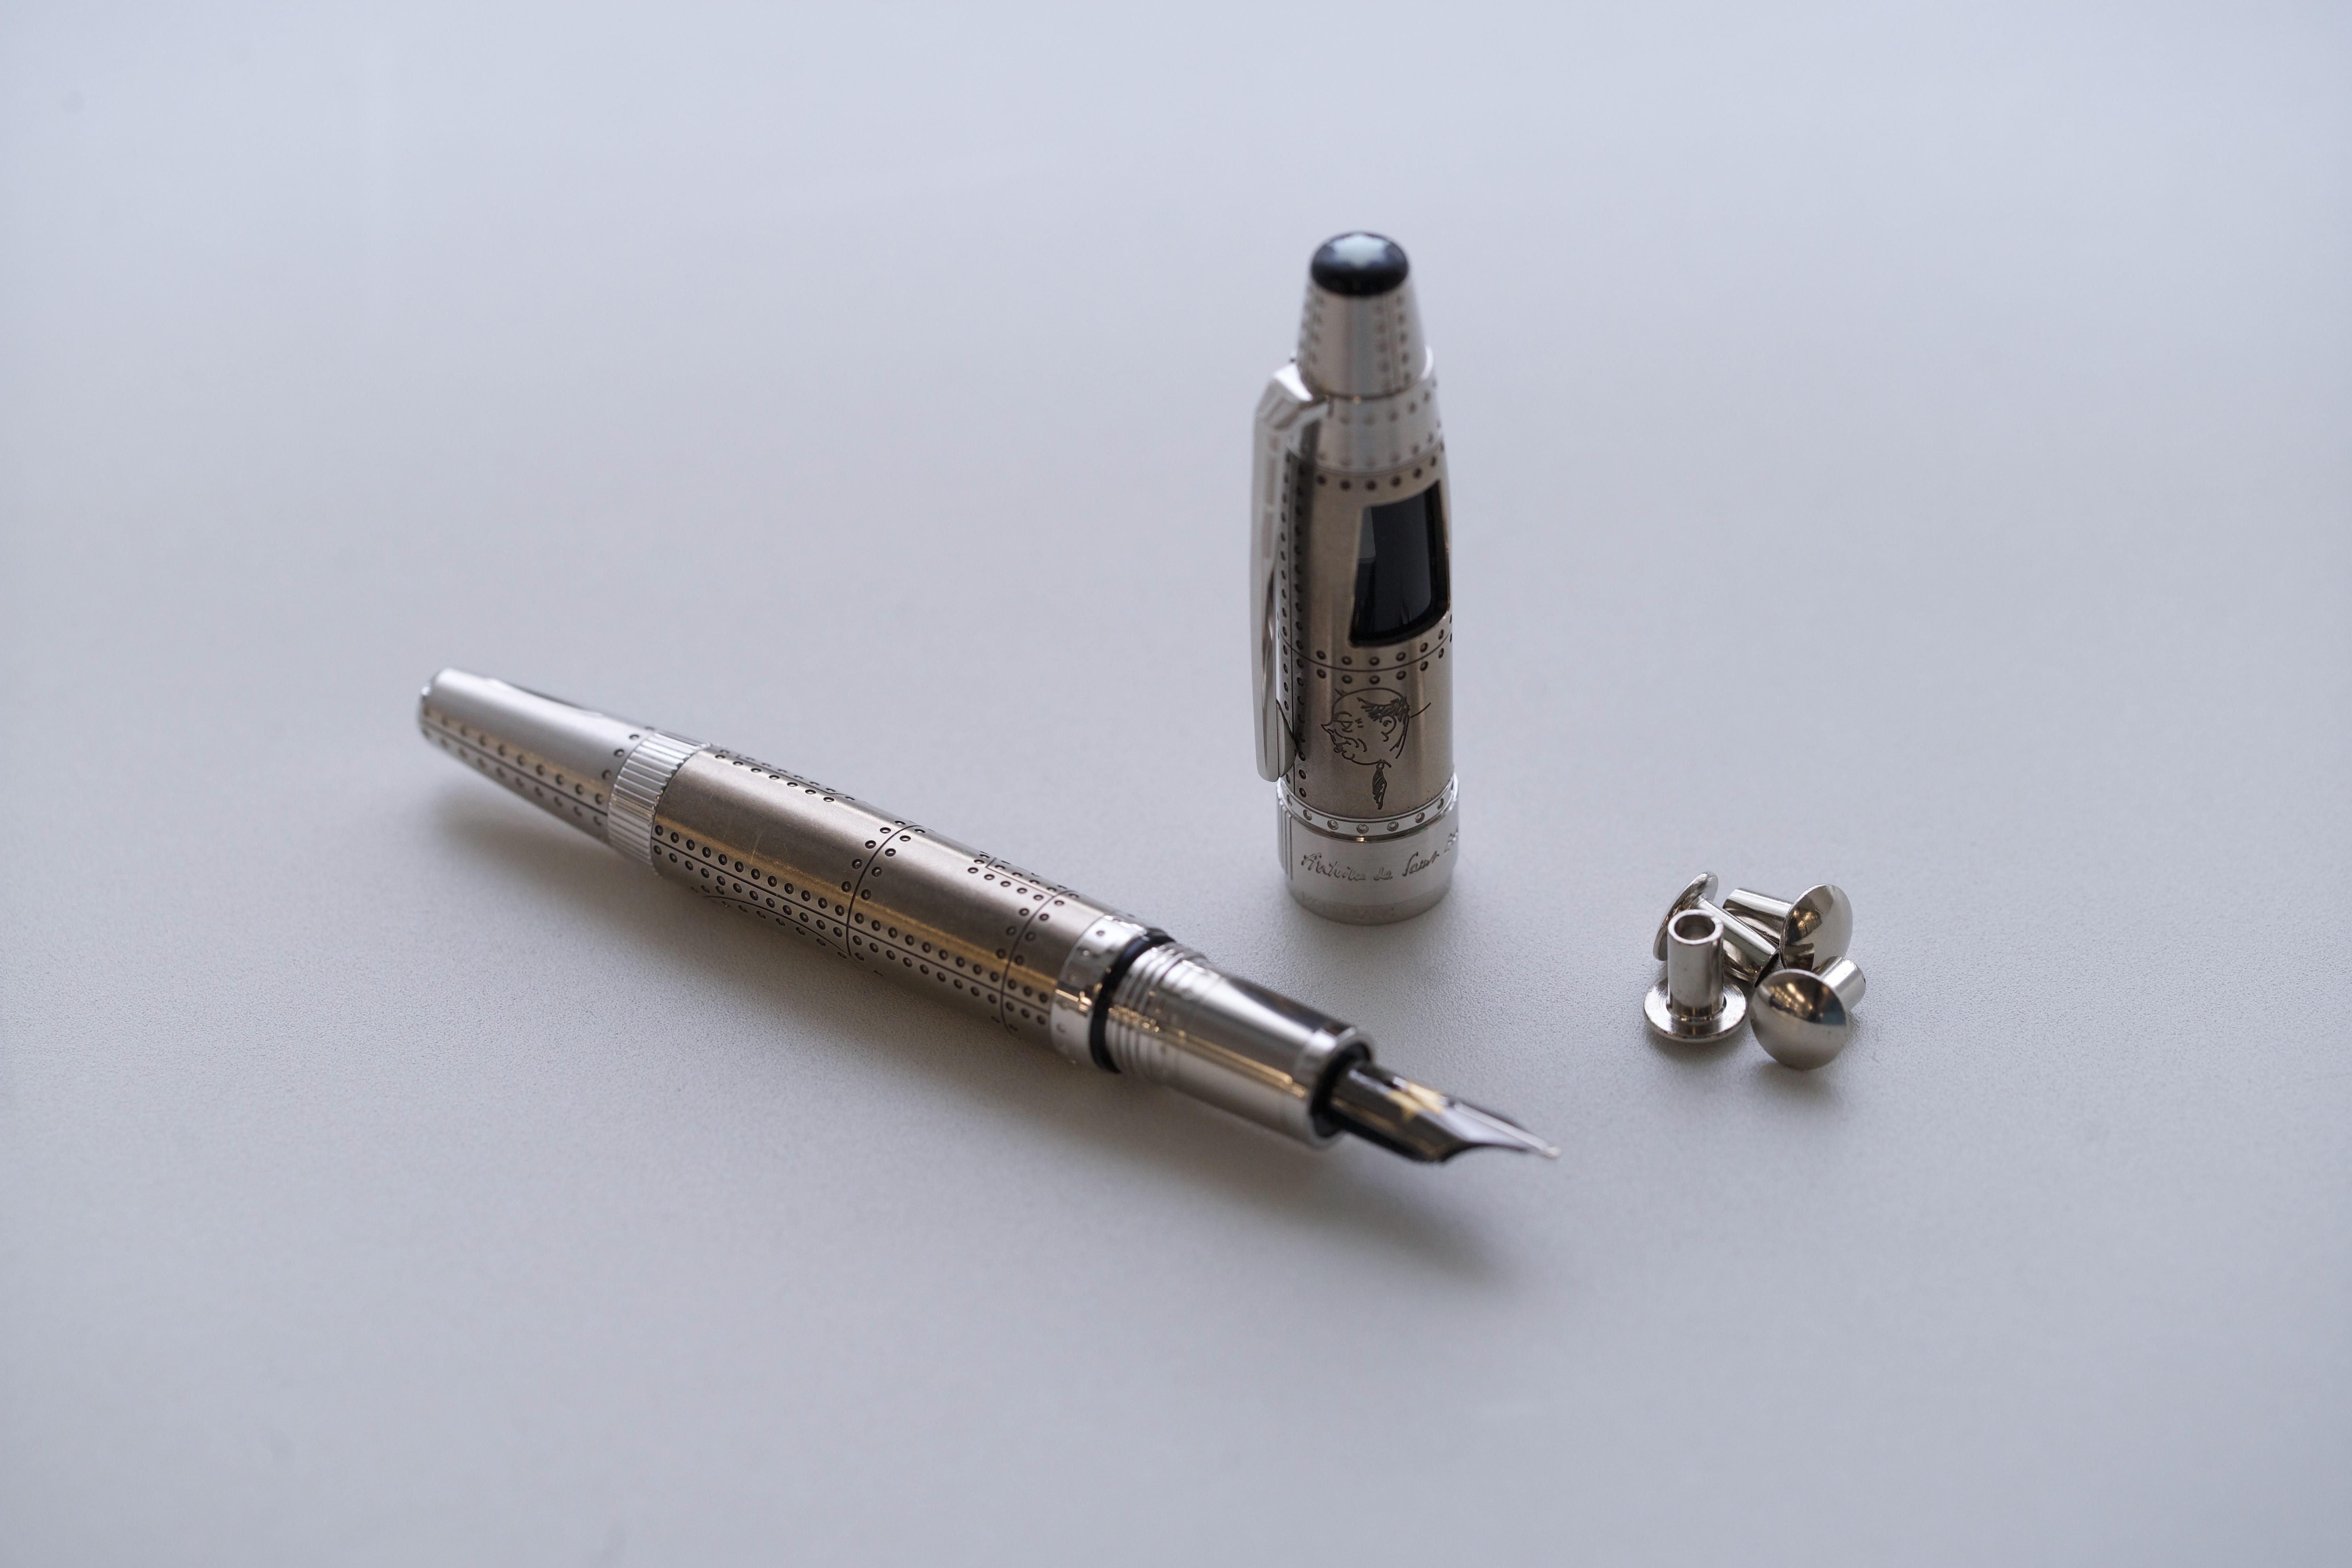 1931 限量这是我心目中万宝龙设计得最有整体感的一支钢笔!